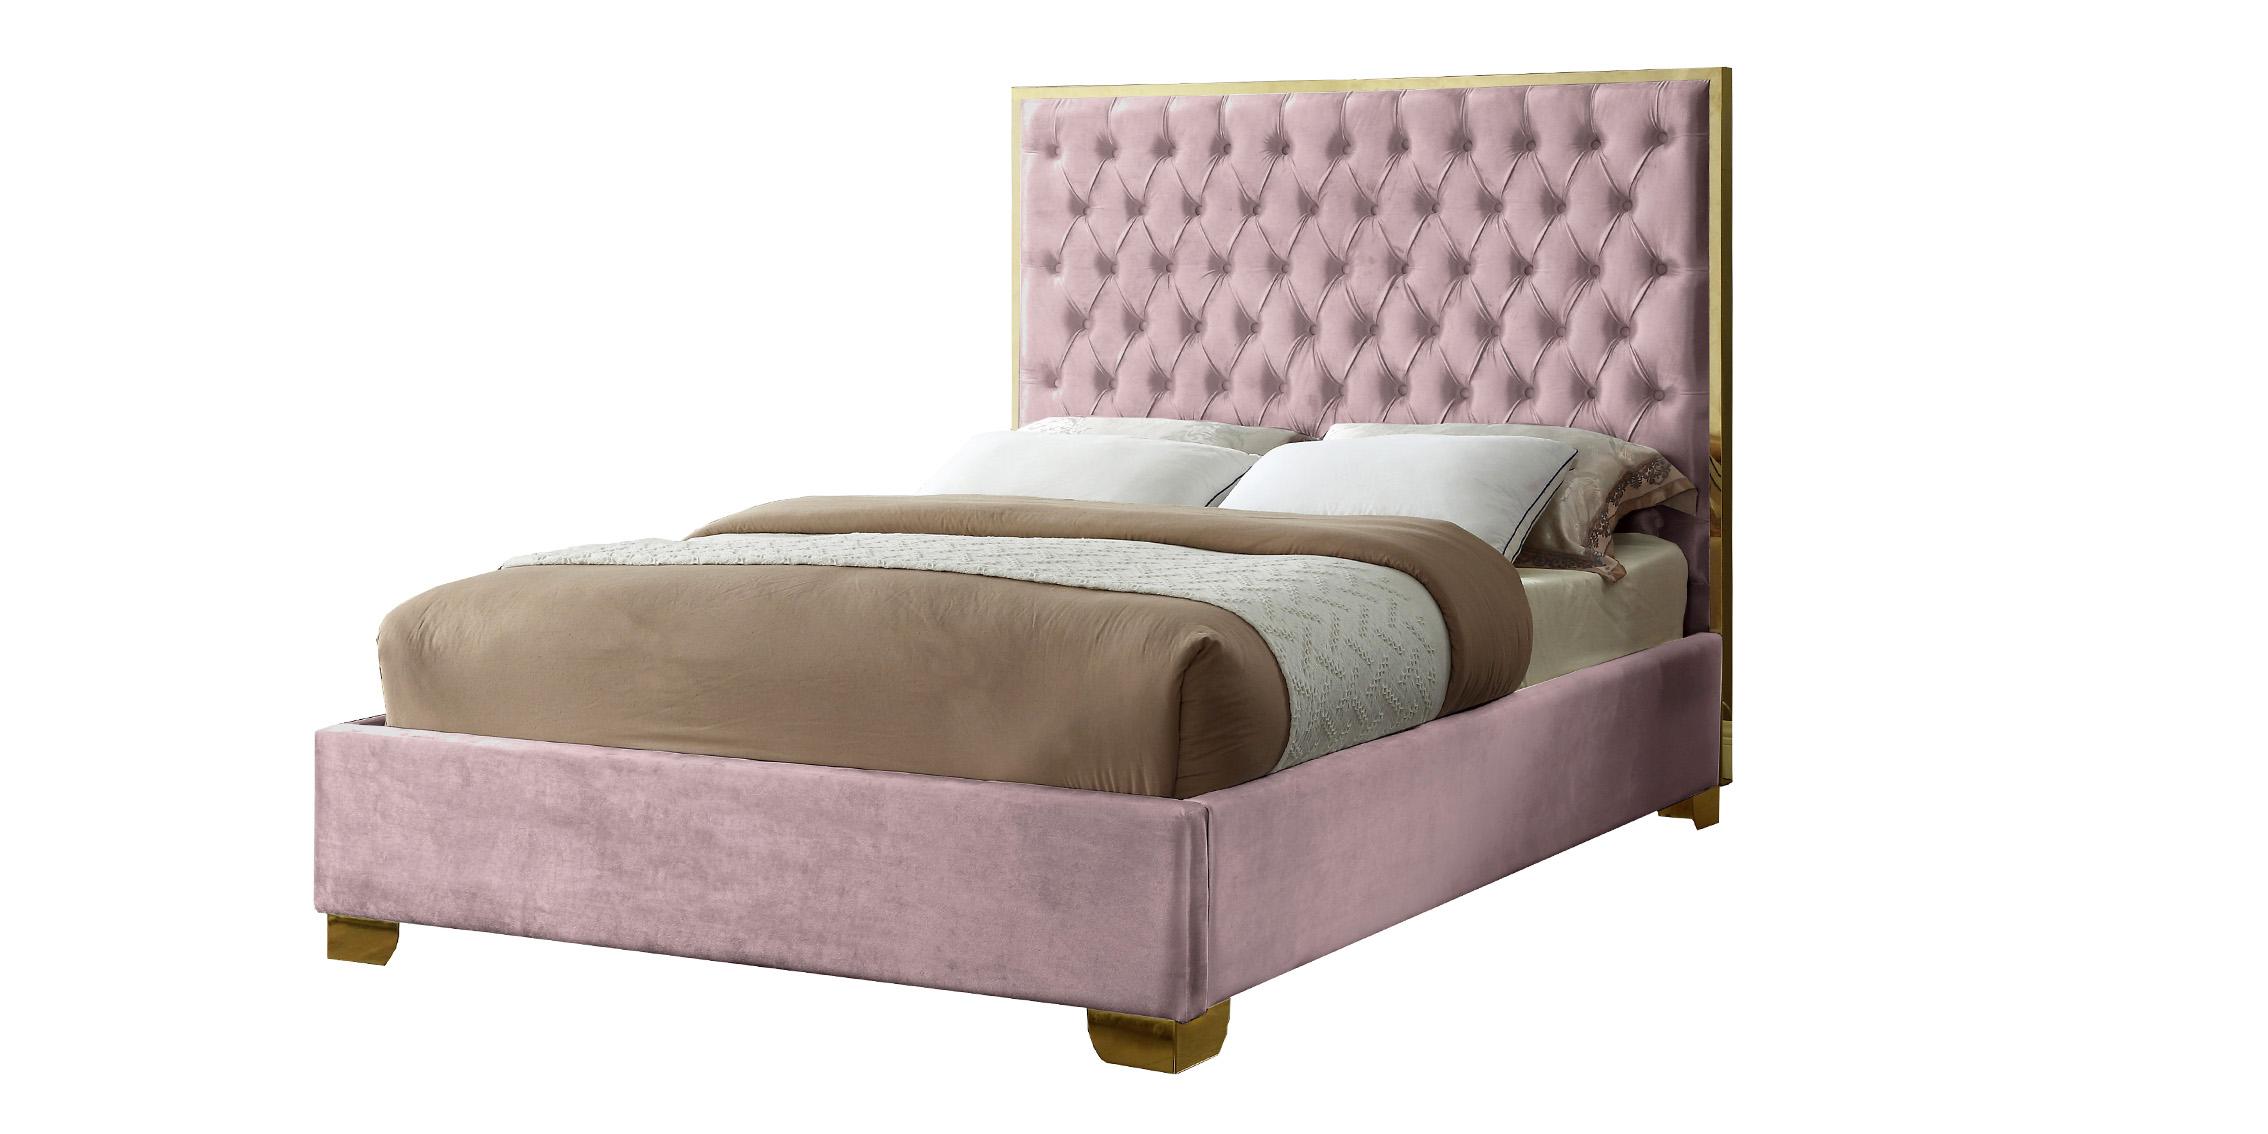 

    
Meridian Furniture LanaPink-Q Platform Bed Pink LanaPink-Q
